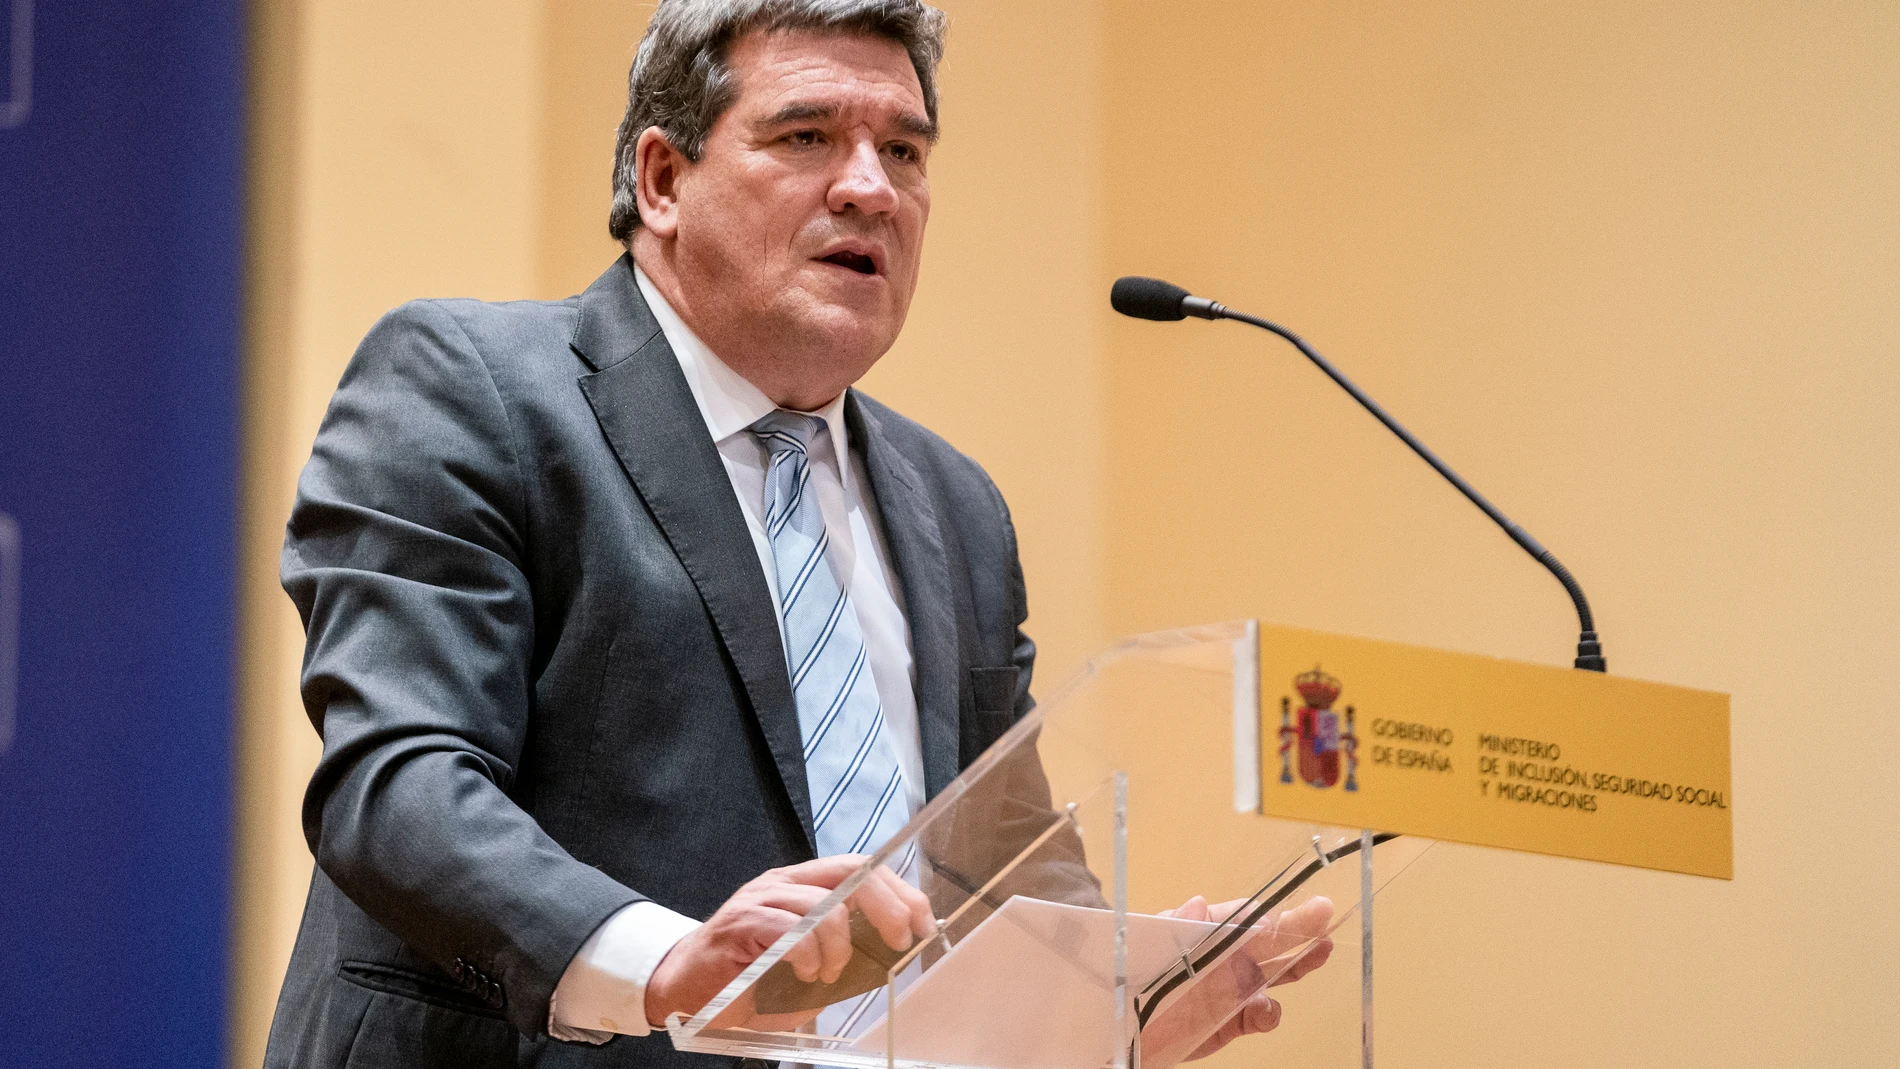 El ministro de Inclusión, Seguridad Social y Migraciones, José Luis Escrivá, interviene en el acto de presentación de la exposición "Sueños de ayer y de hoy... sueños en el mar", a 13 de diciembre de 2021, en Madrid, (España)